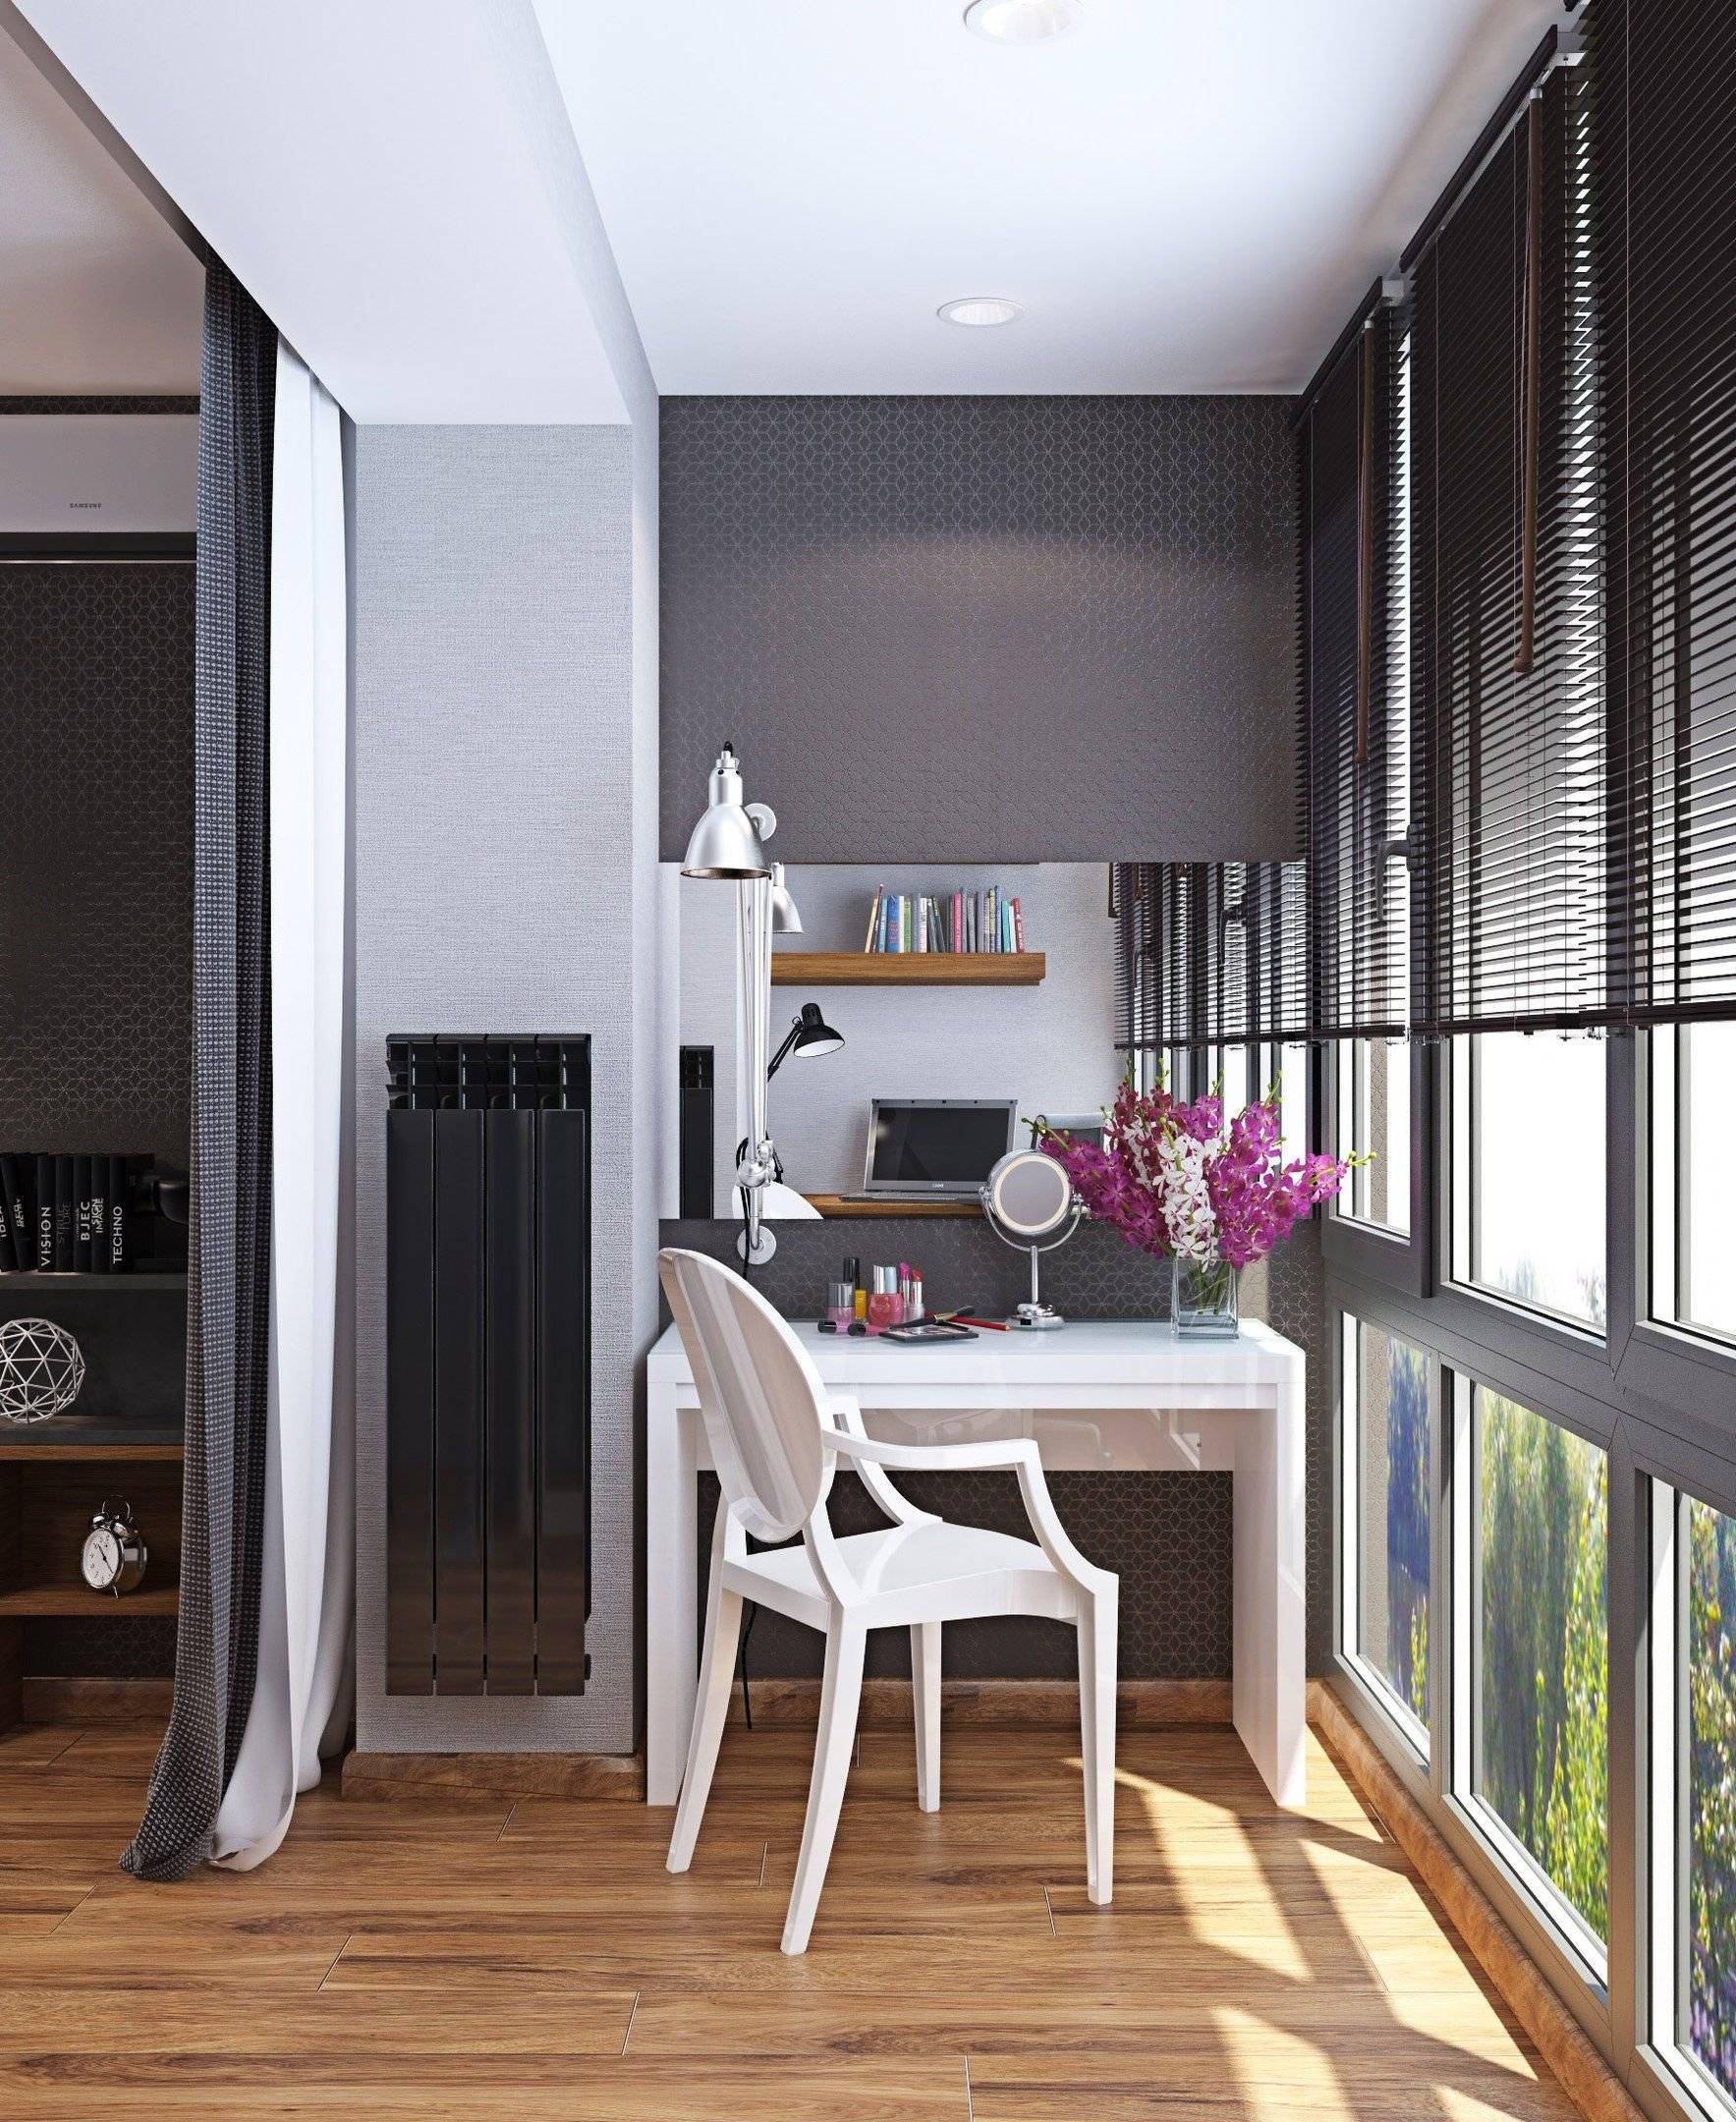 Кухня на балконе или в лоджии: фото дизайна кухни 4, 6 кв.м., кухни в квартире-студии